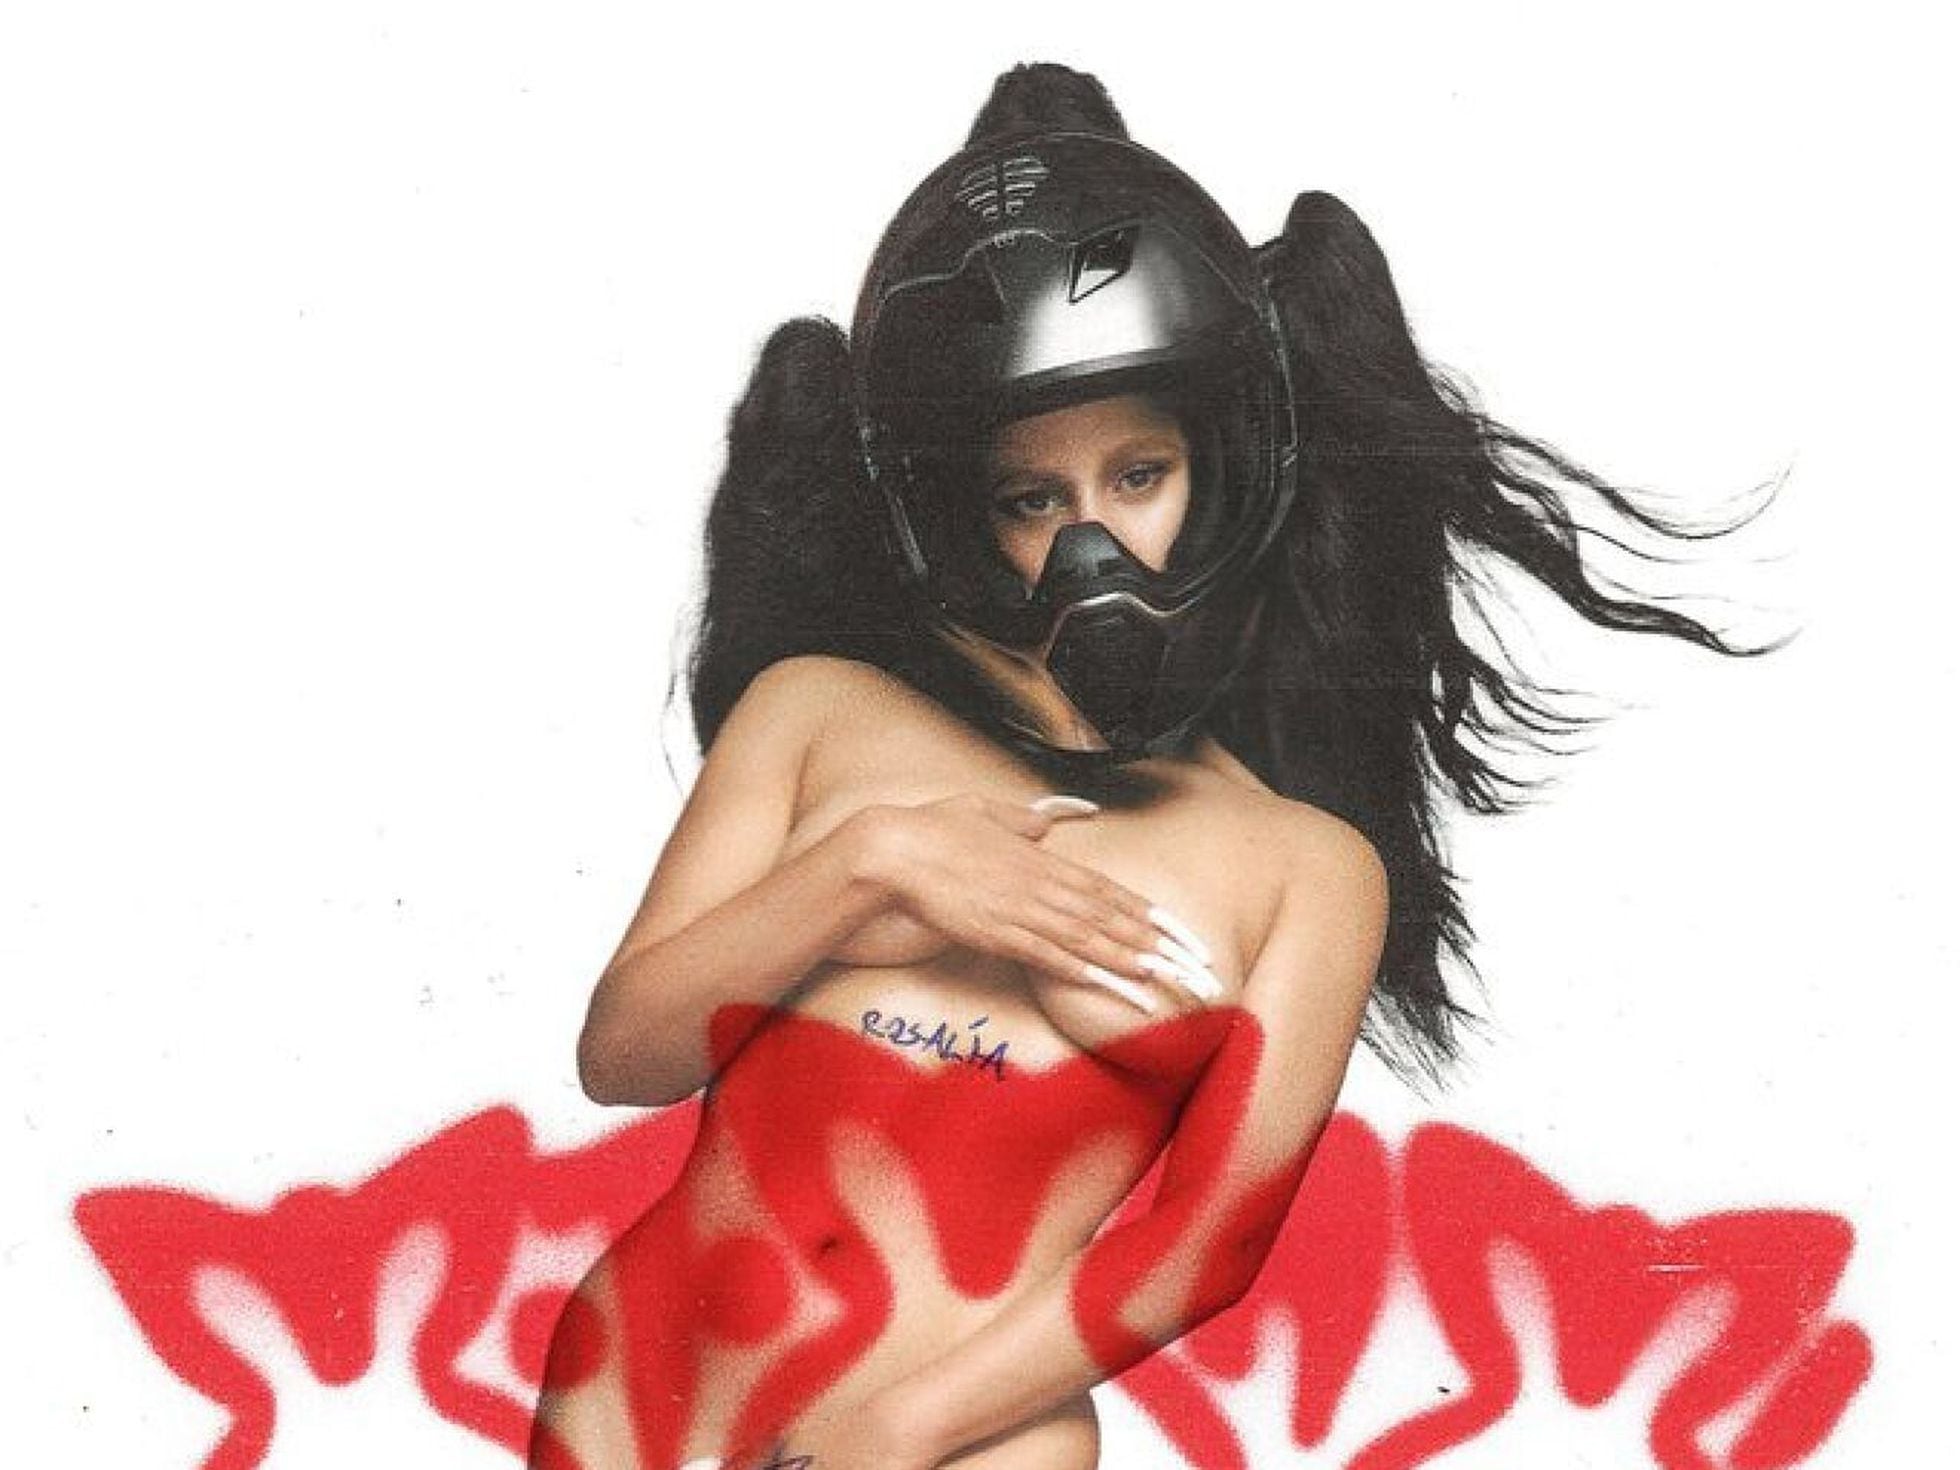 Naked girl covering breast pop art avatars Vector Image